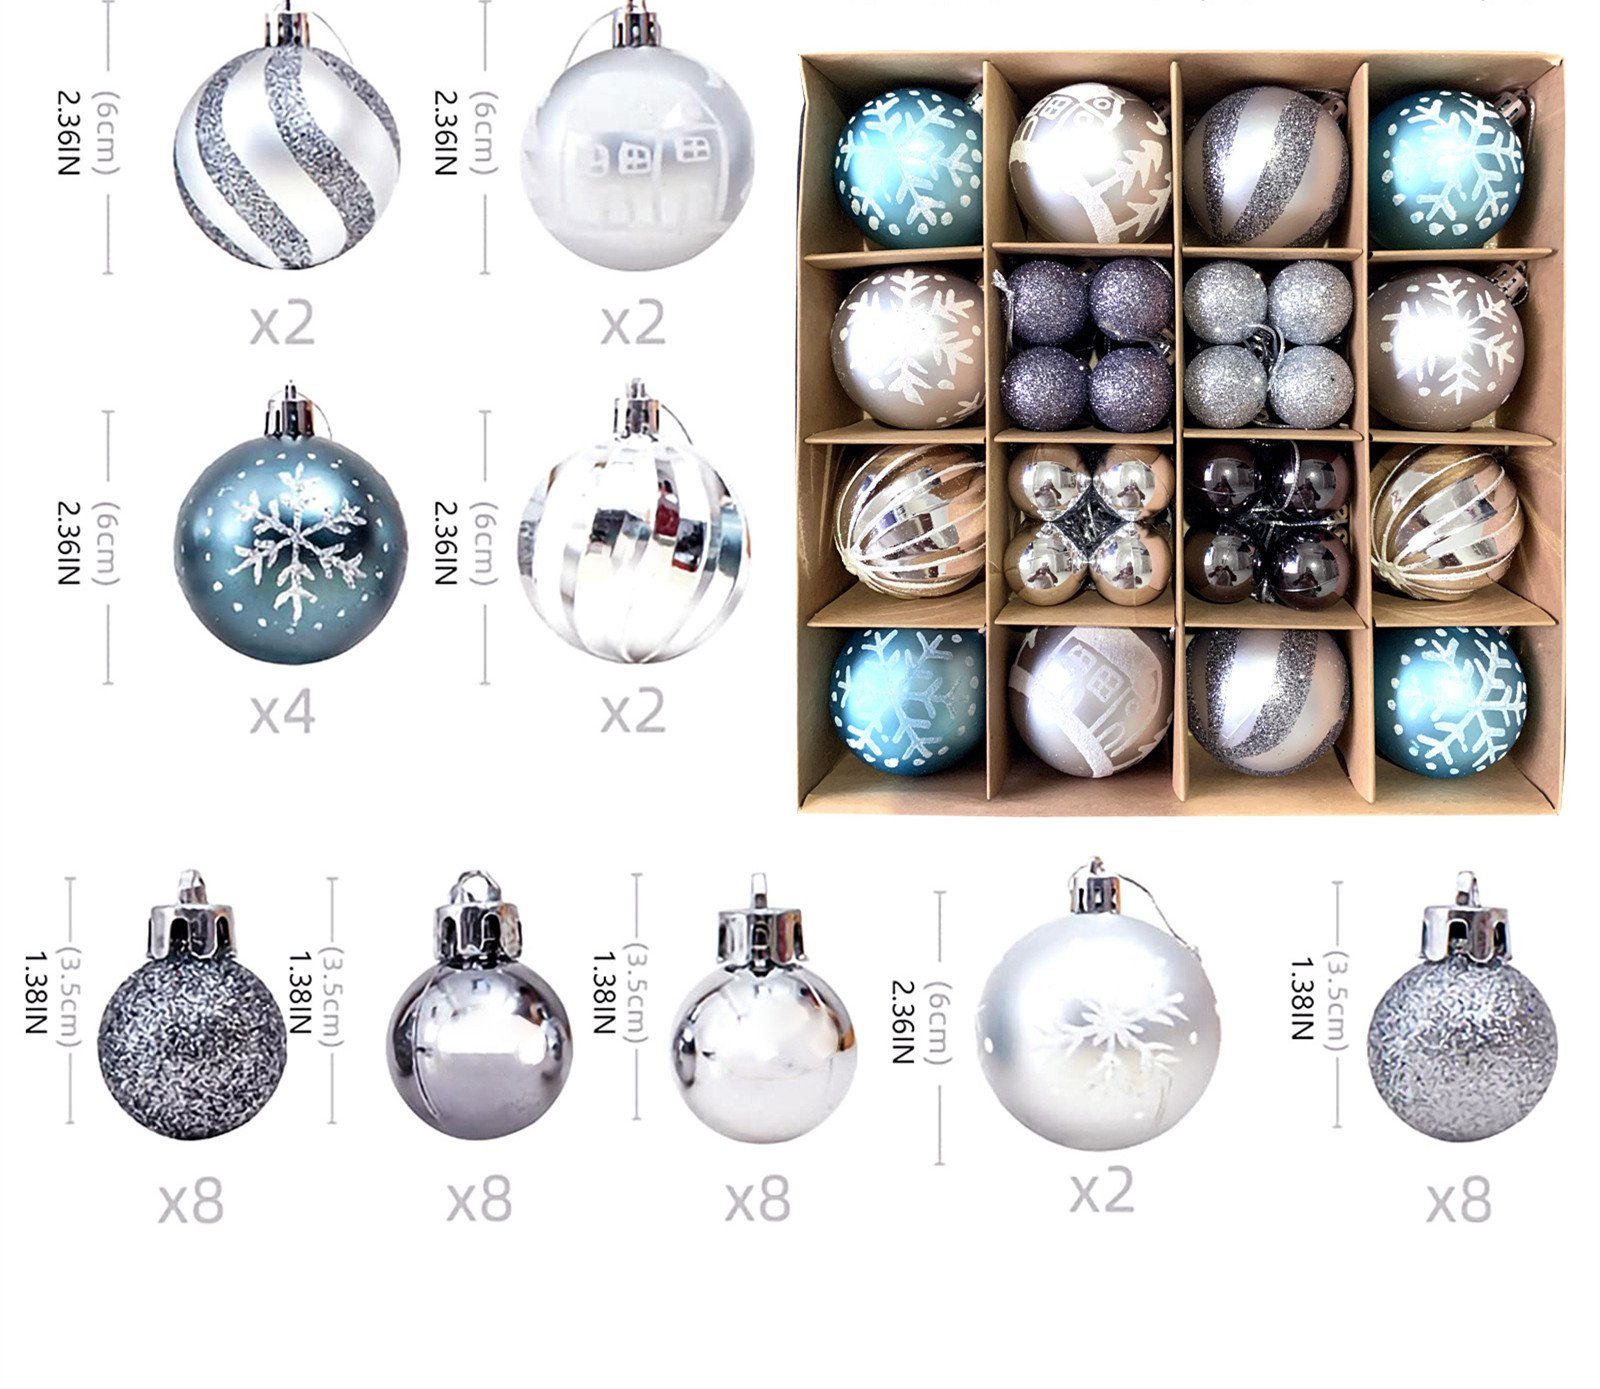 XDeer Weihnachtsbaumkugel Weihnachtskugeln Set, Christbaumkugeln Deko Weihnachten, Weihnachtsbaumschmuck,Weihnachtsbaumkugeln silber + blau